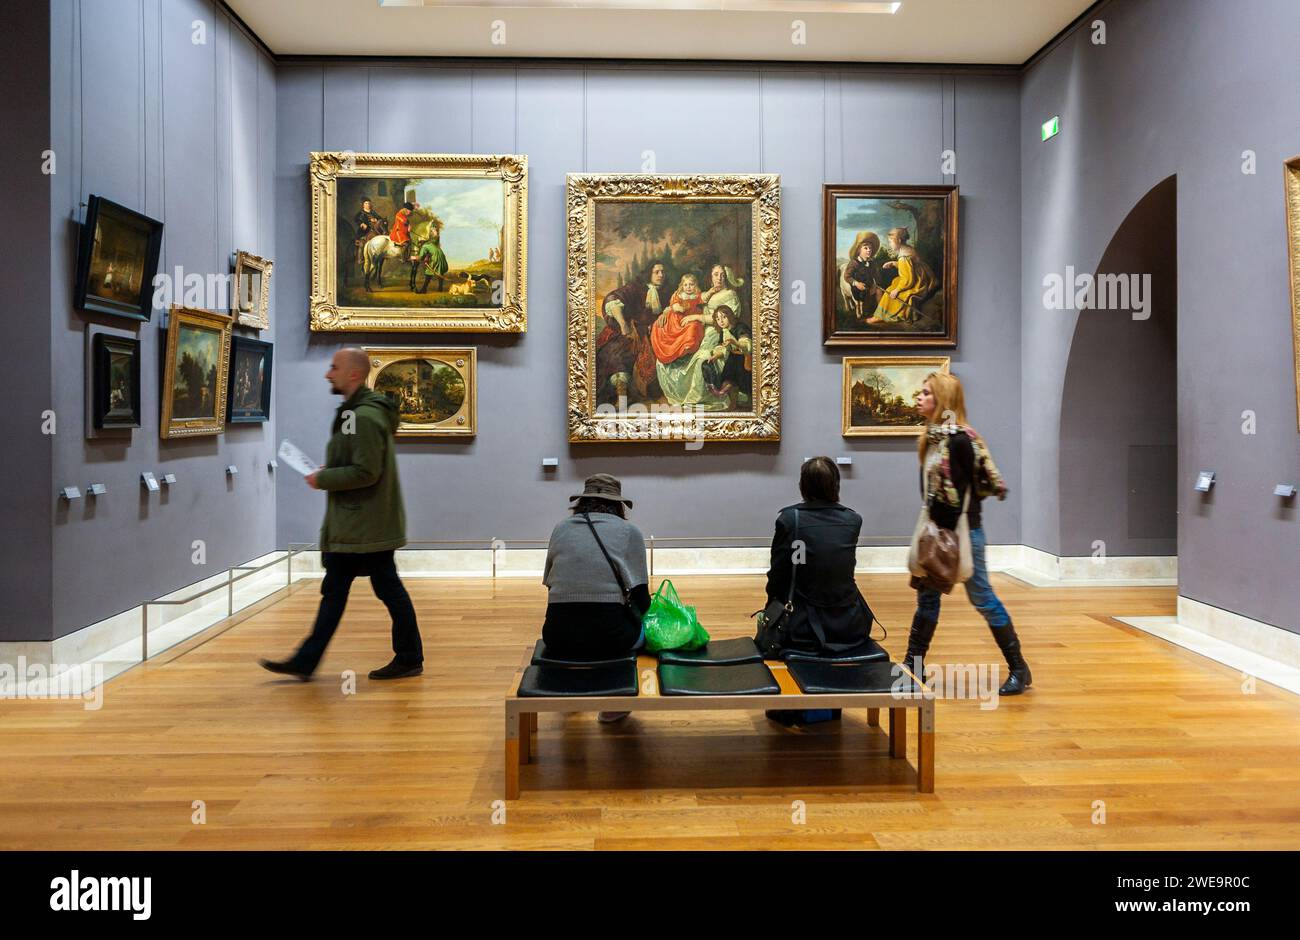 Paris, France, Groupe de personnes, touristes, visiter, a l'intérieur, Galerie d'art, Musée du Louvre, peintures d'art hollandais antiques du 17e siècle Banque D'Images